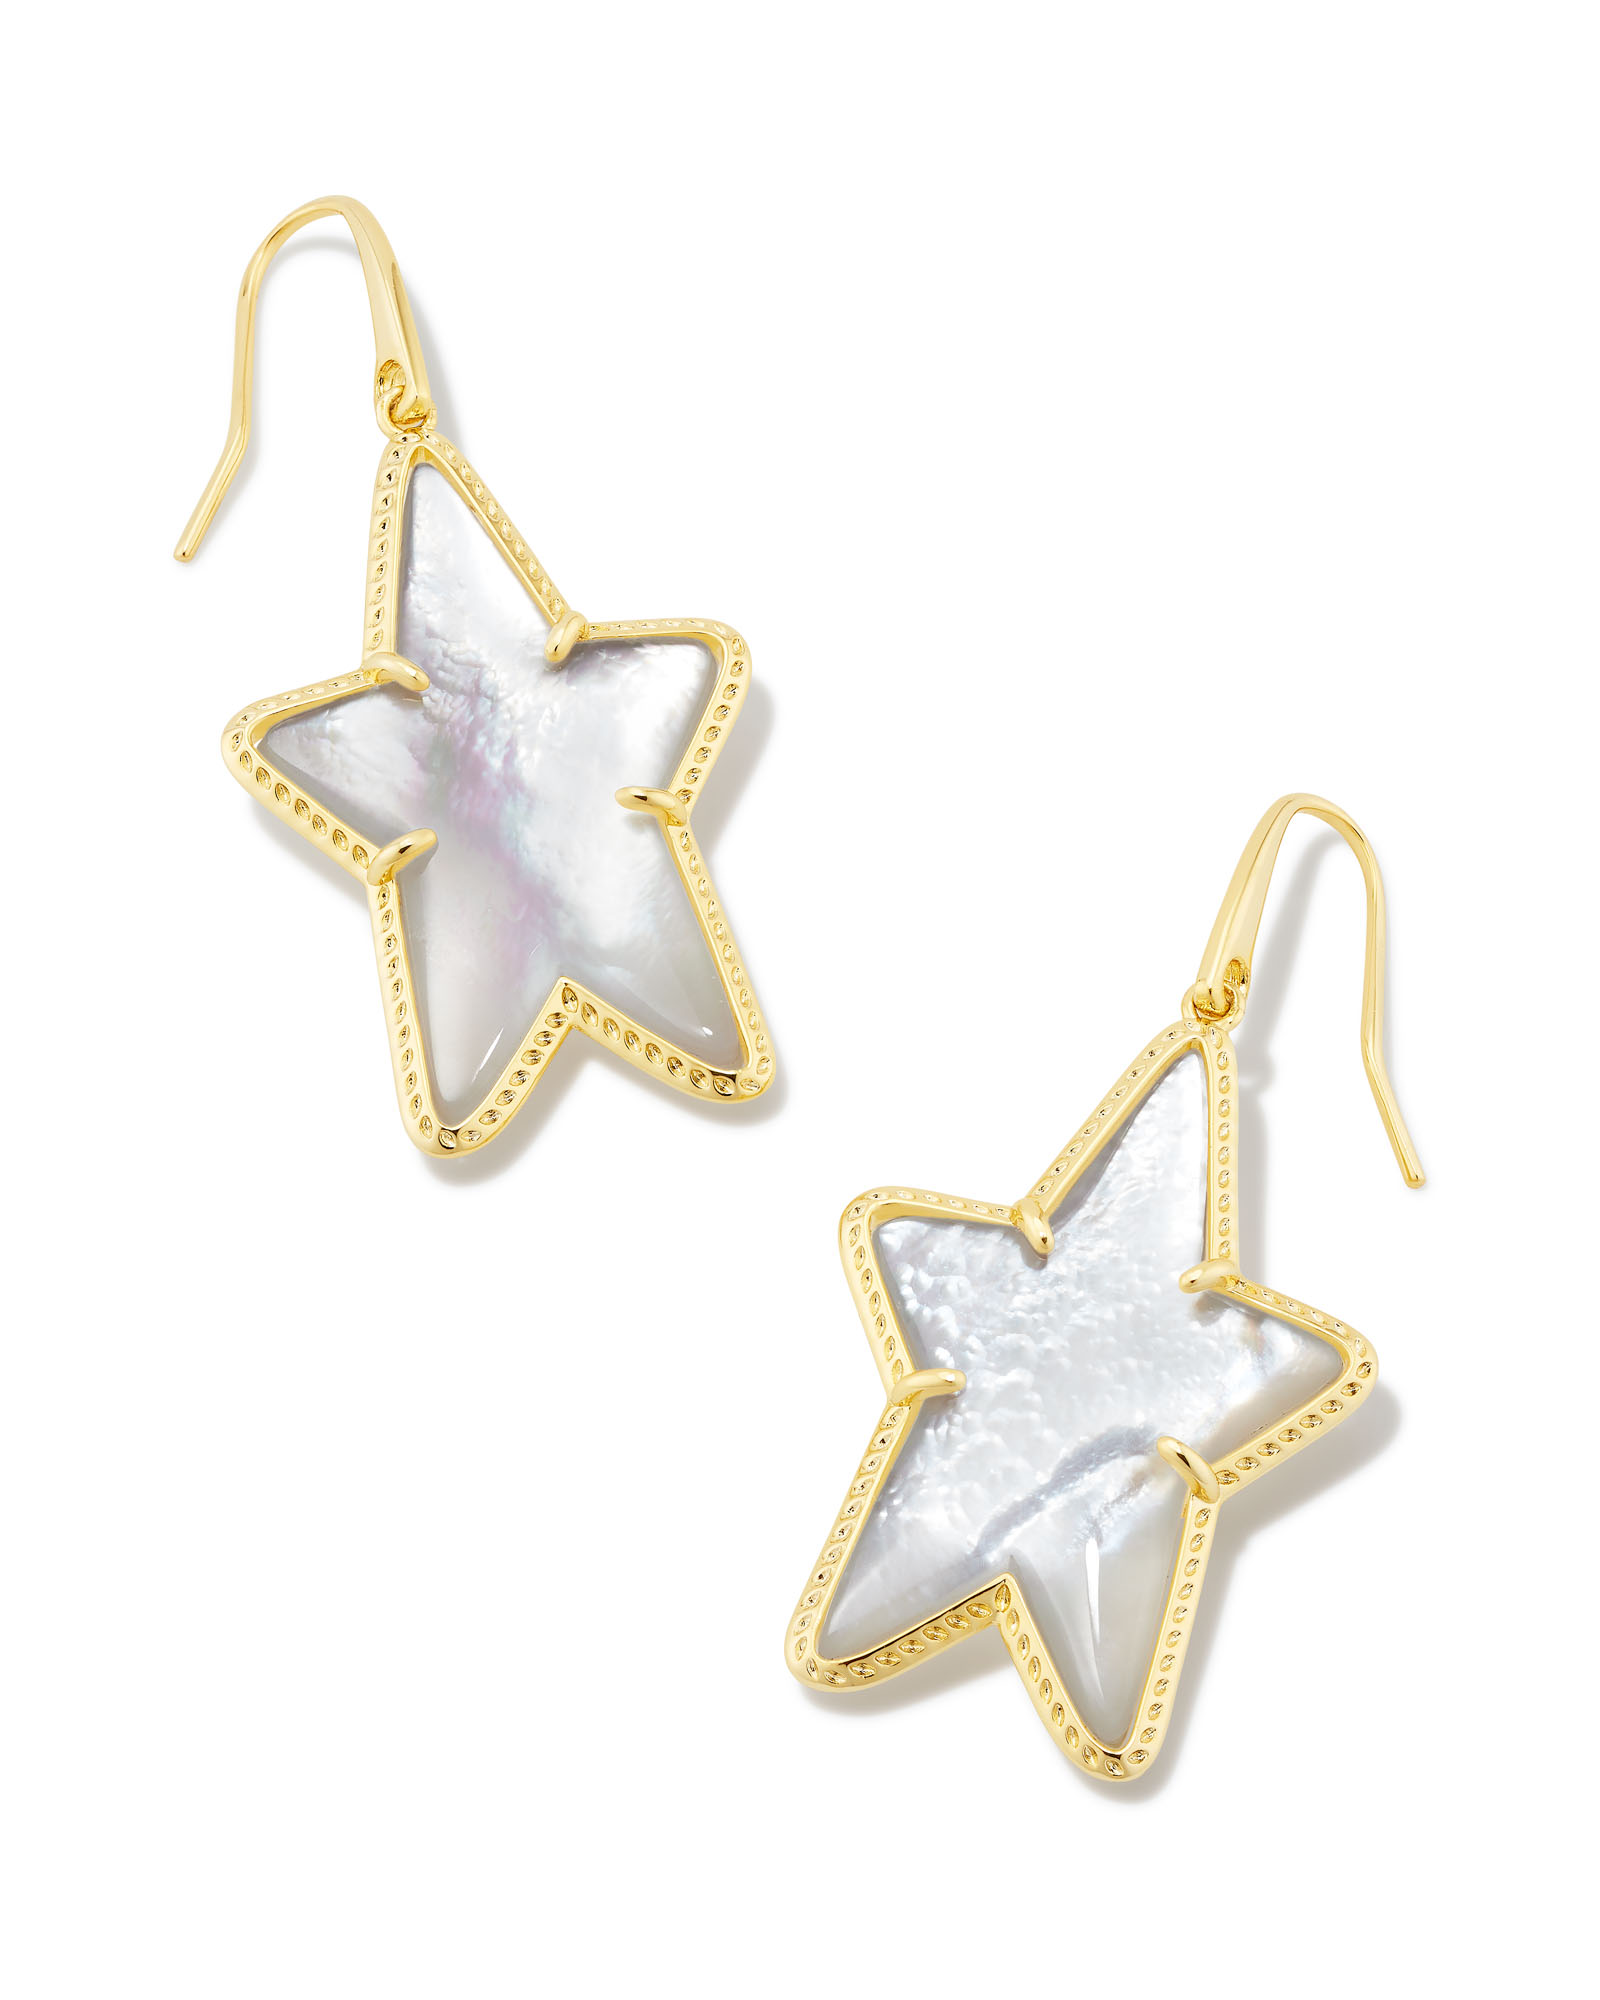 Ada Gold Star Drop Earrings in Ivory Mother-of-Pearl | Kendra Scott